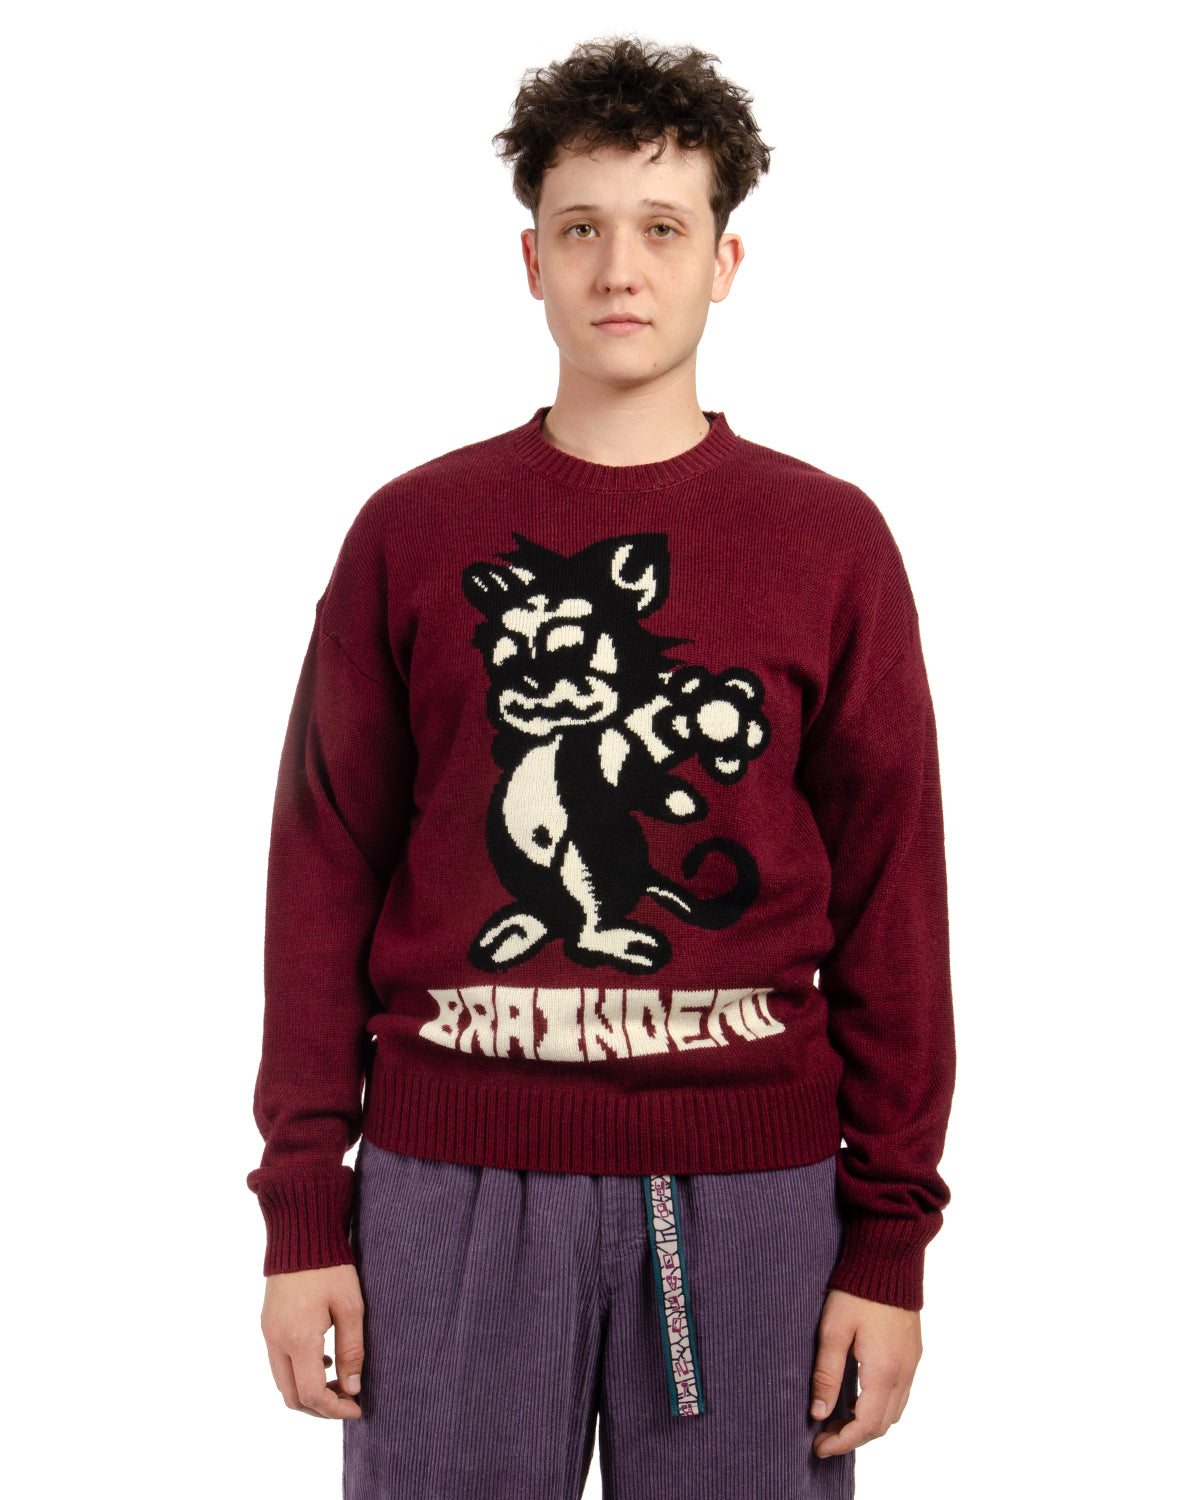 Meow Knit Sweater - Raspberry – Brain Dead